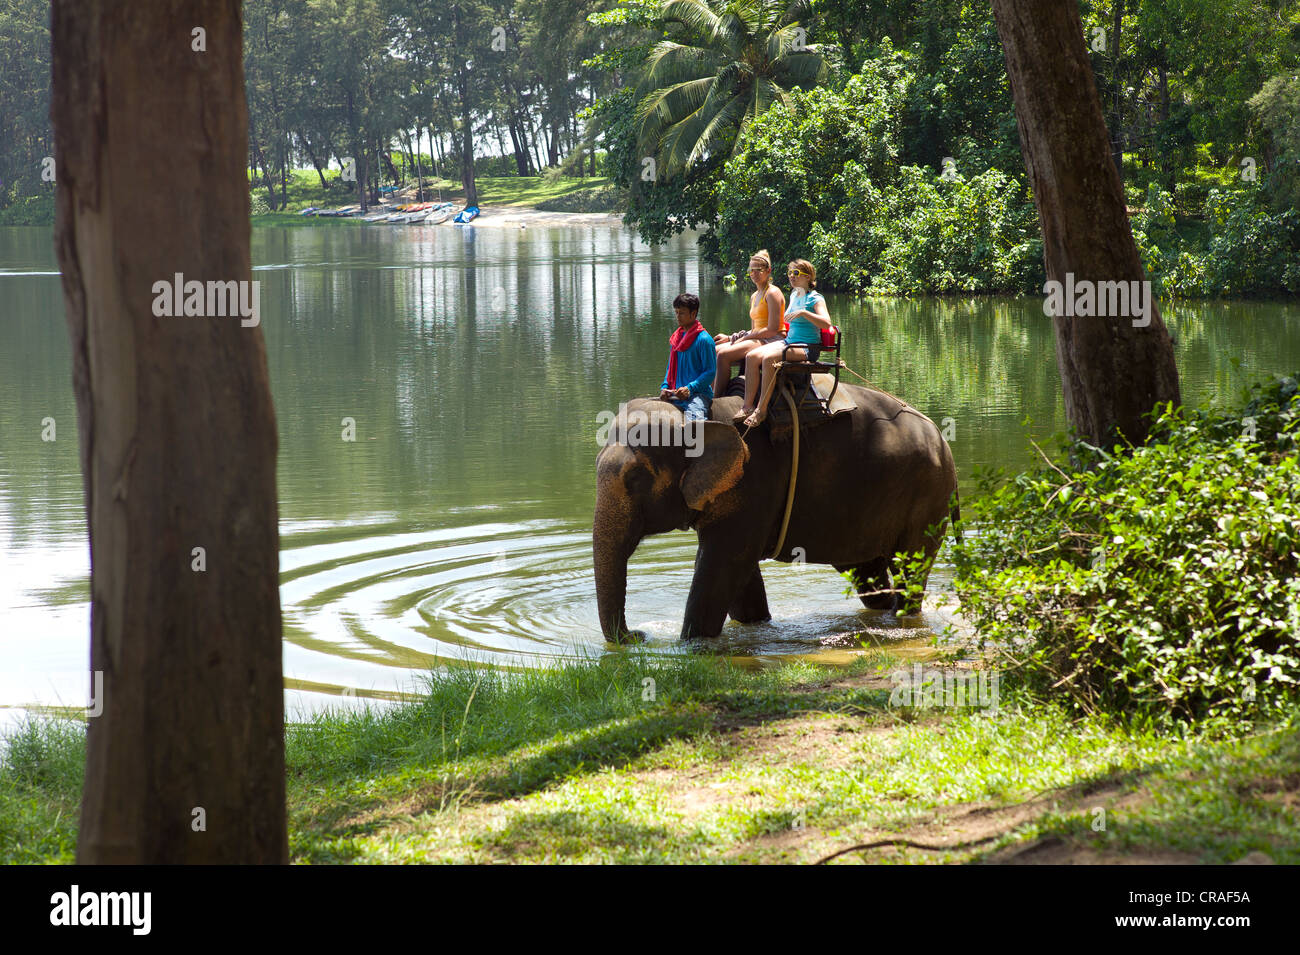 Asiatischer Elefant (Elephas Maximus) domestiziert, als touristische Attraktion, PublicGround, Phuket, Thailand, Asien Stockfoto